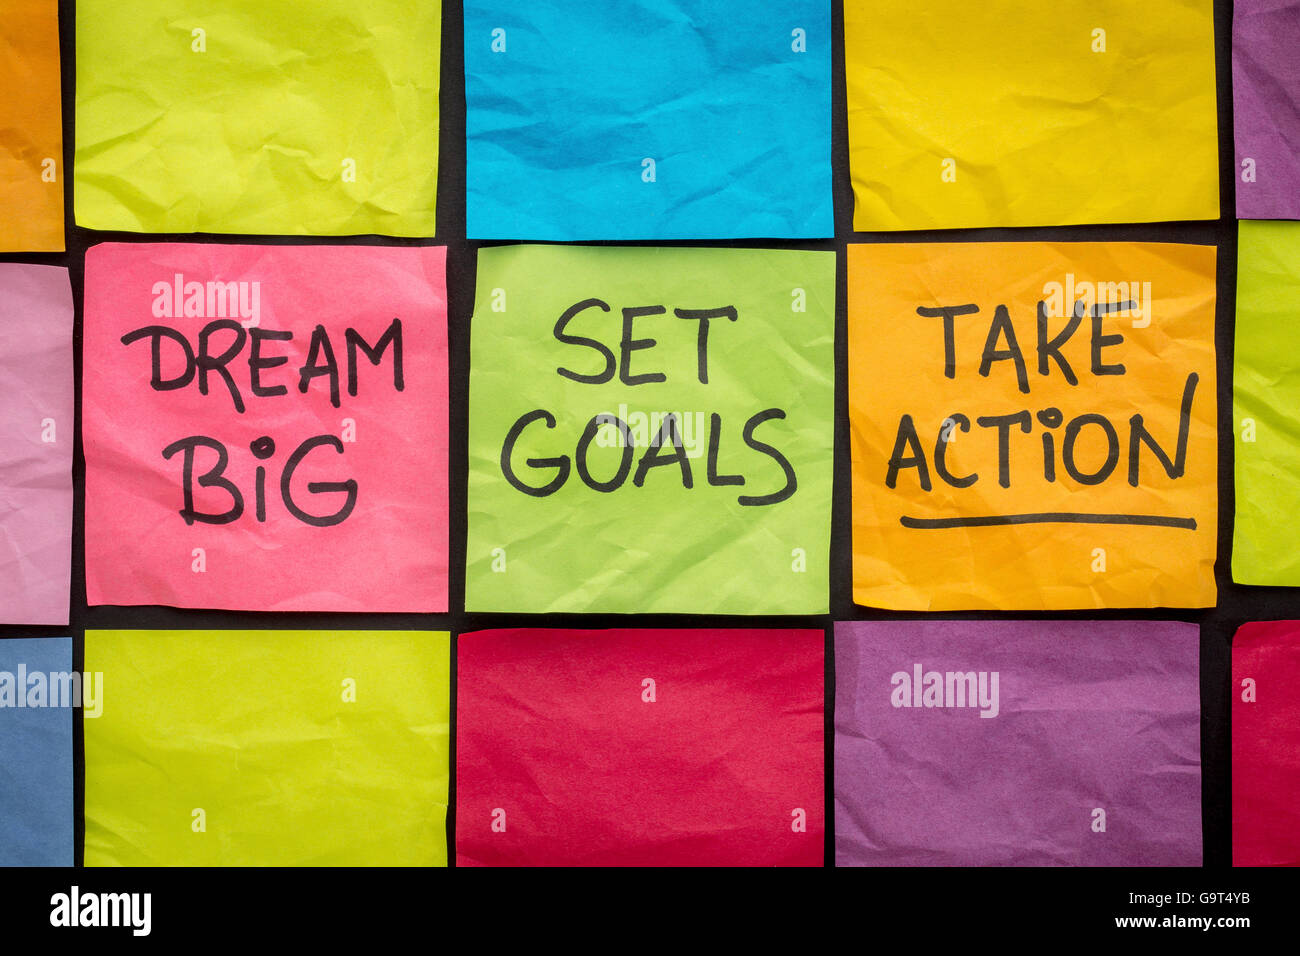 Soñar en grande, establecer metas, tomar acción - asesoramiento motivacional o recordatorio en coloridos Sticky notes Foto de stock